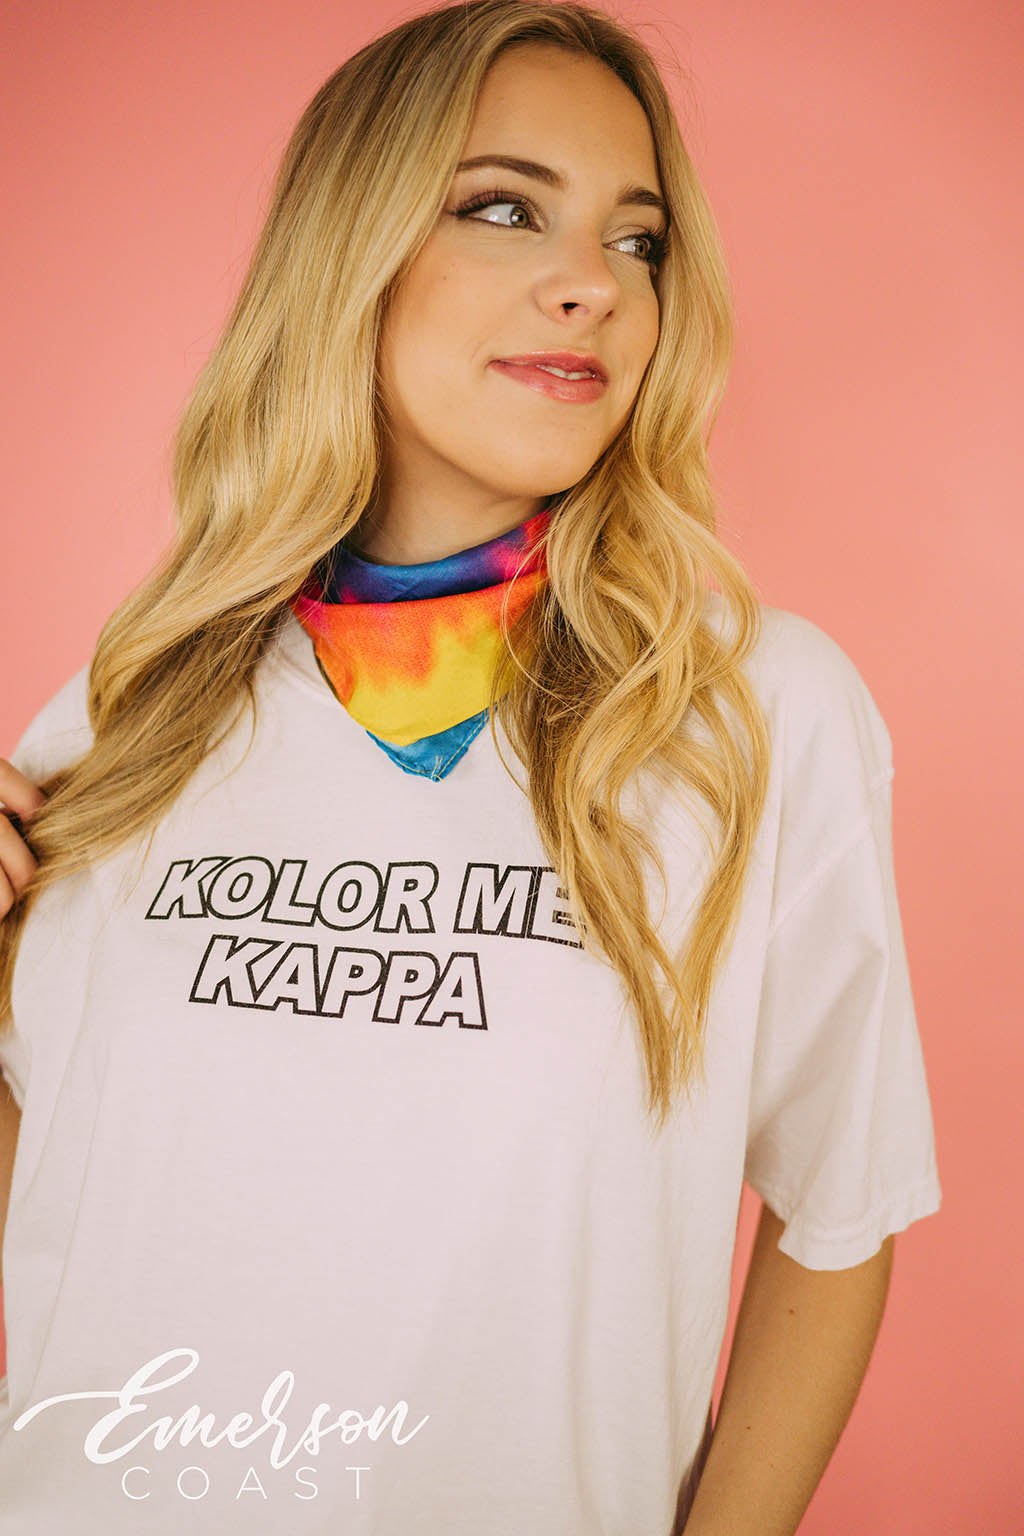 Kappa Kappa Gamma Color Me KKG Sisterhood Tee